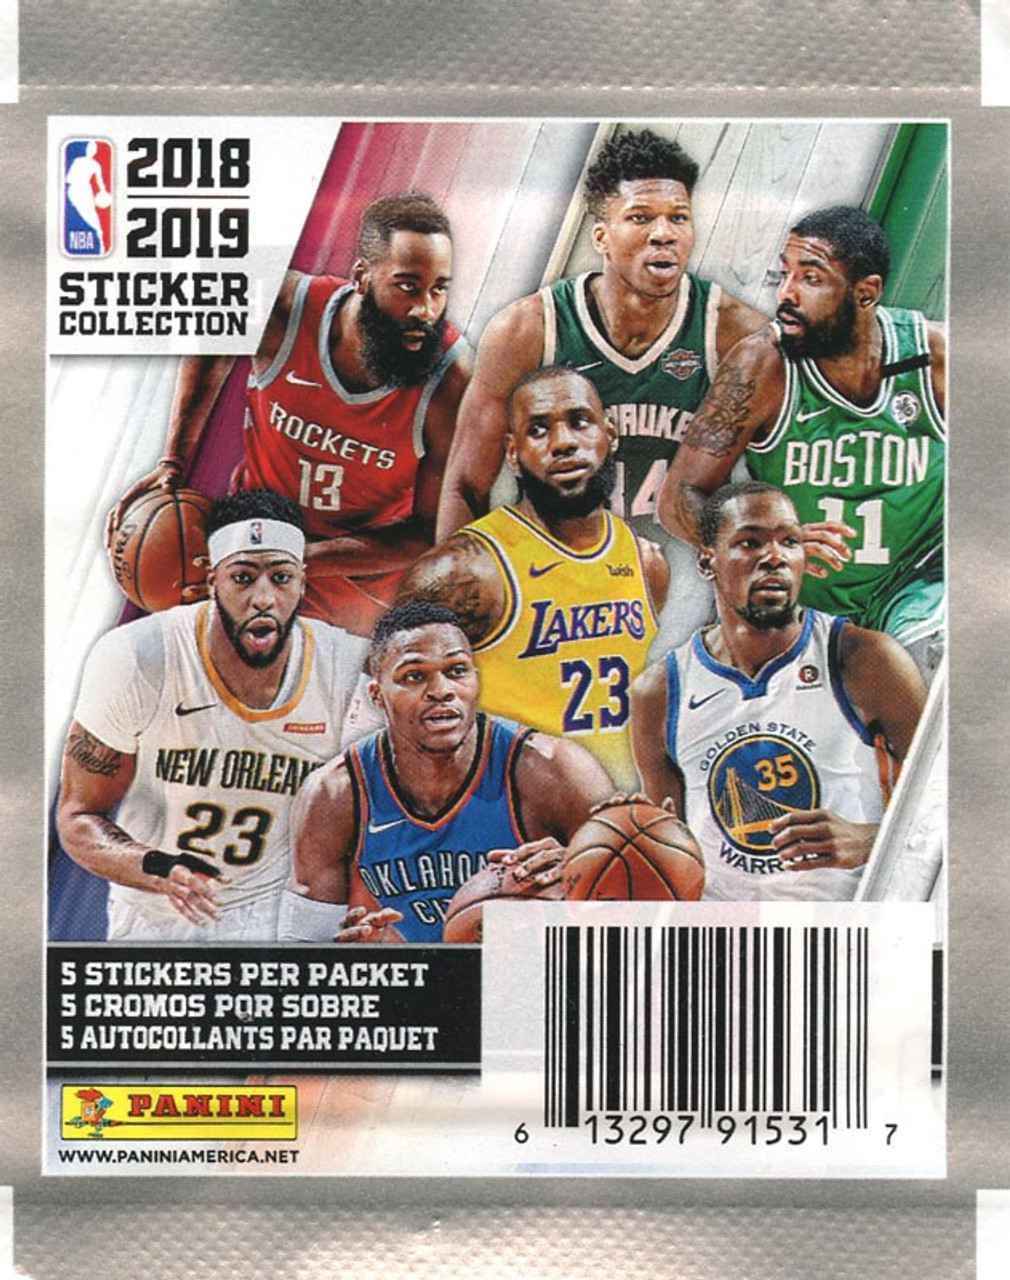 Nba Basketball 2018 19 Sticker Collection Pack Panini Toywiz 